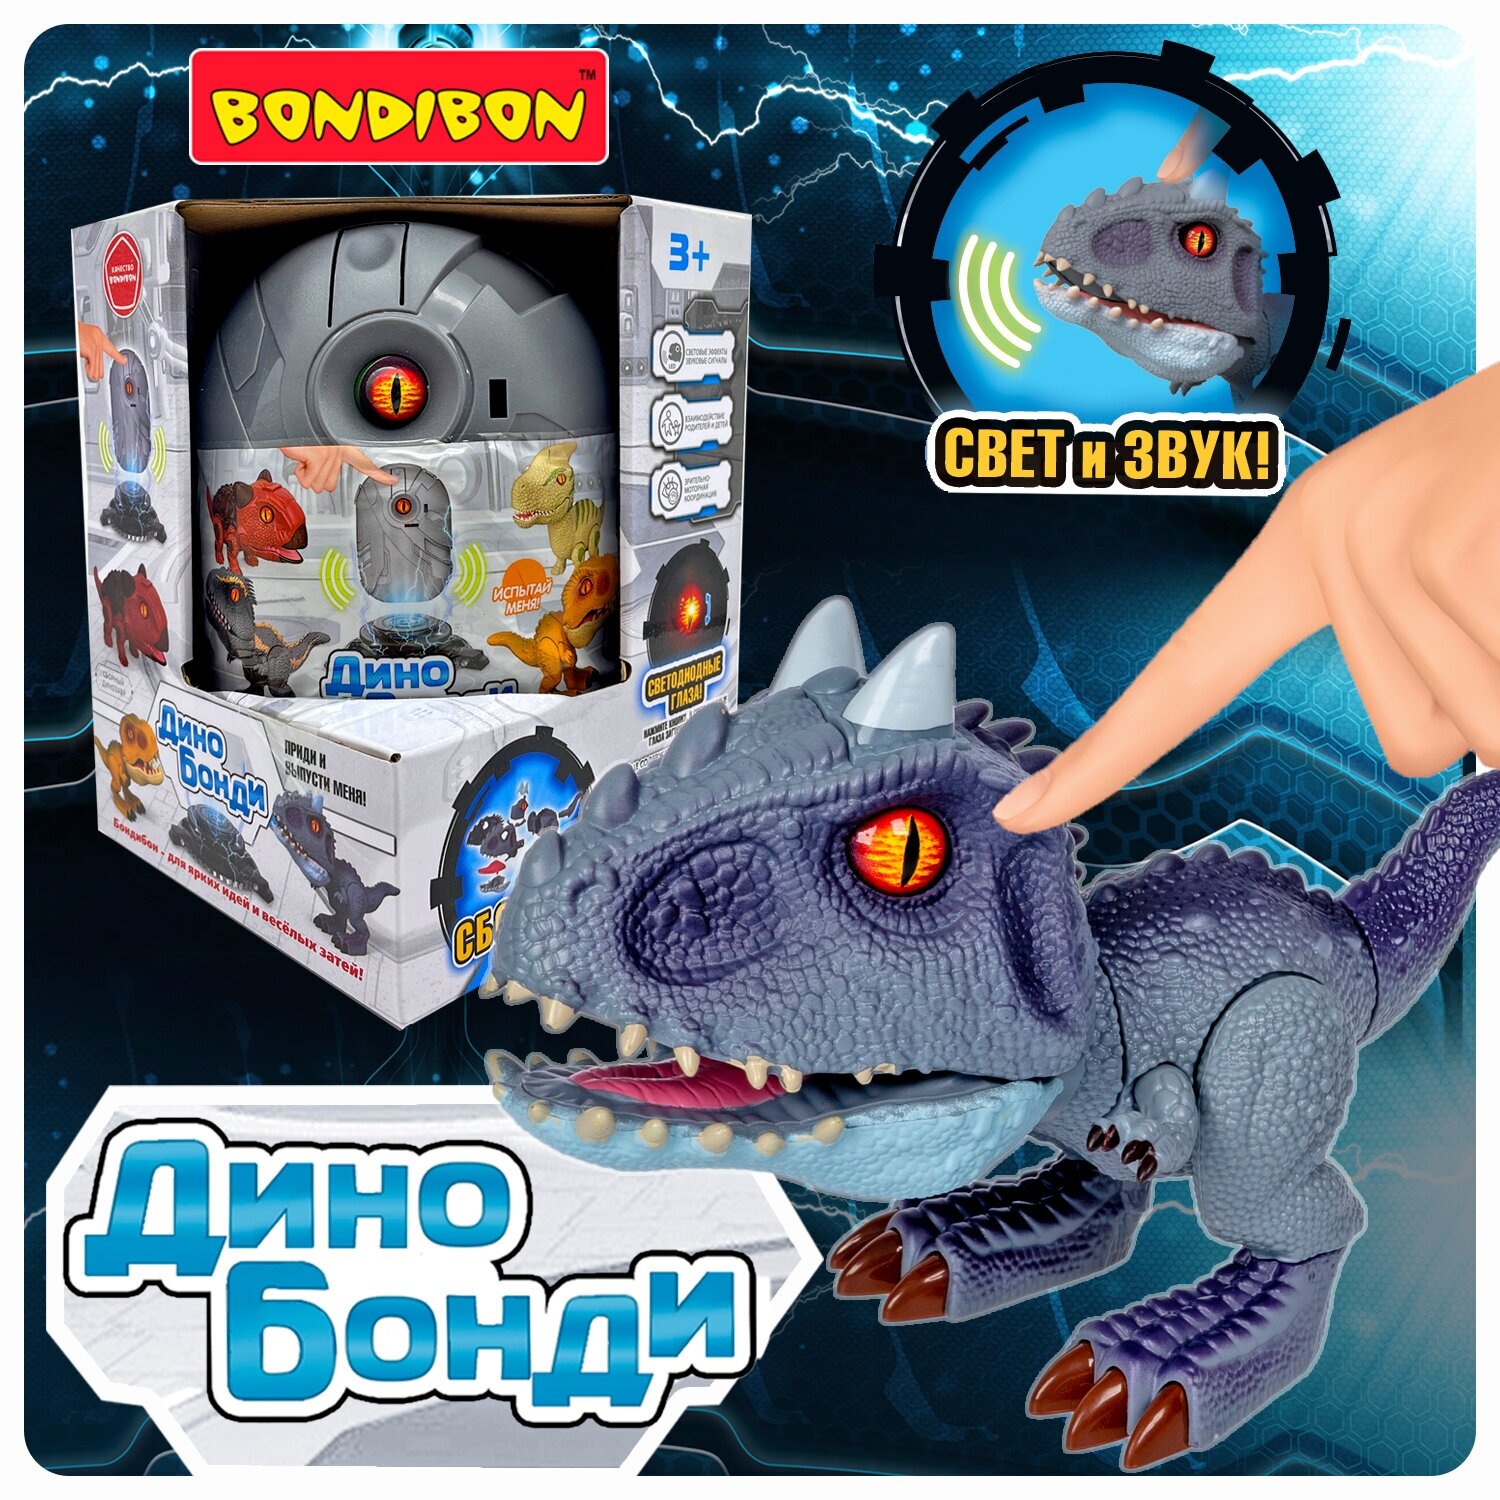 Динозавр в яйце Bondibon сборная игрушка Дино Бонди конструктор Тираннозавр с эффектом света и звука, подарок